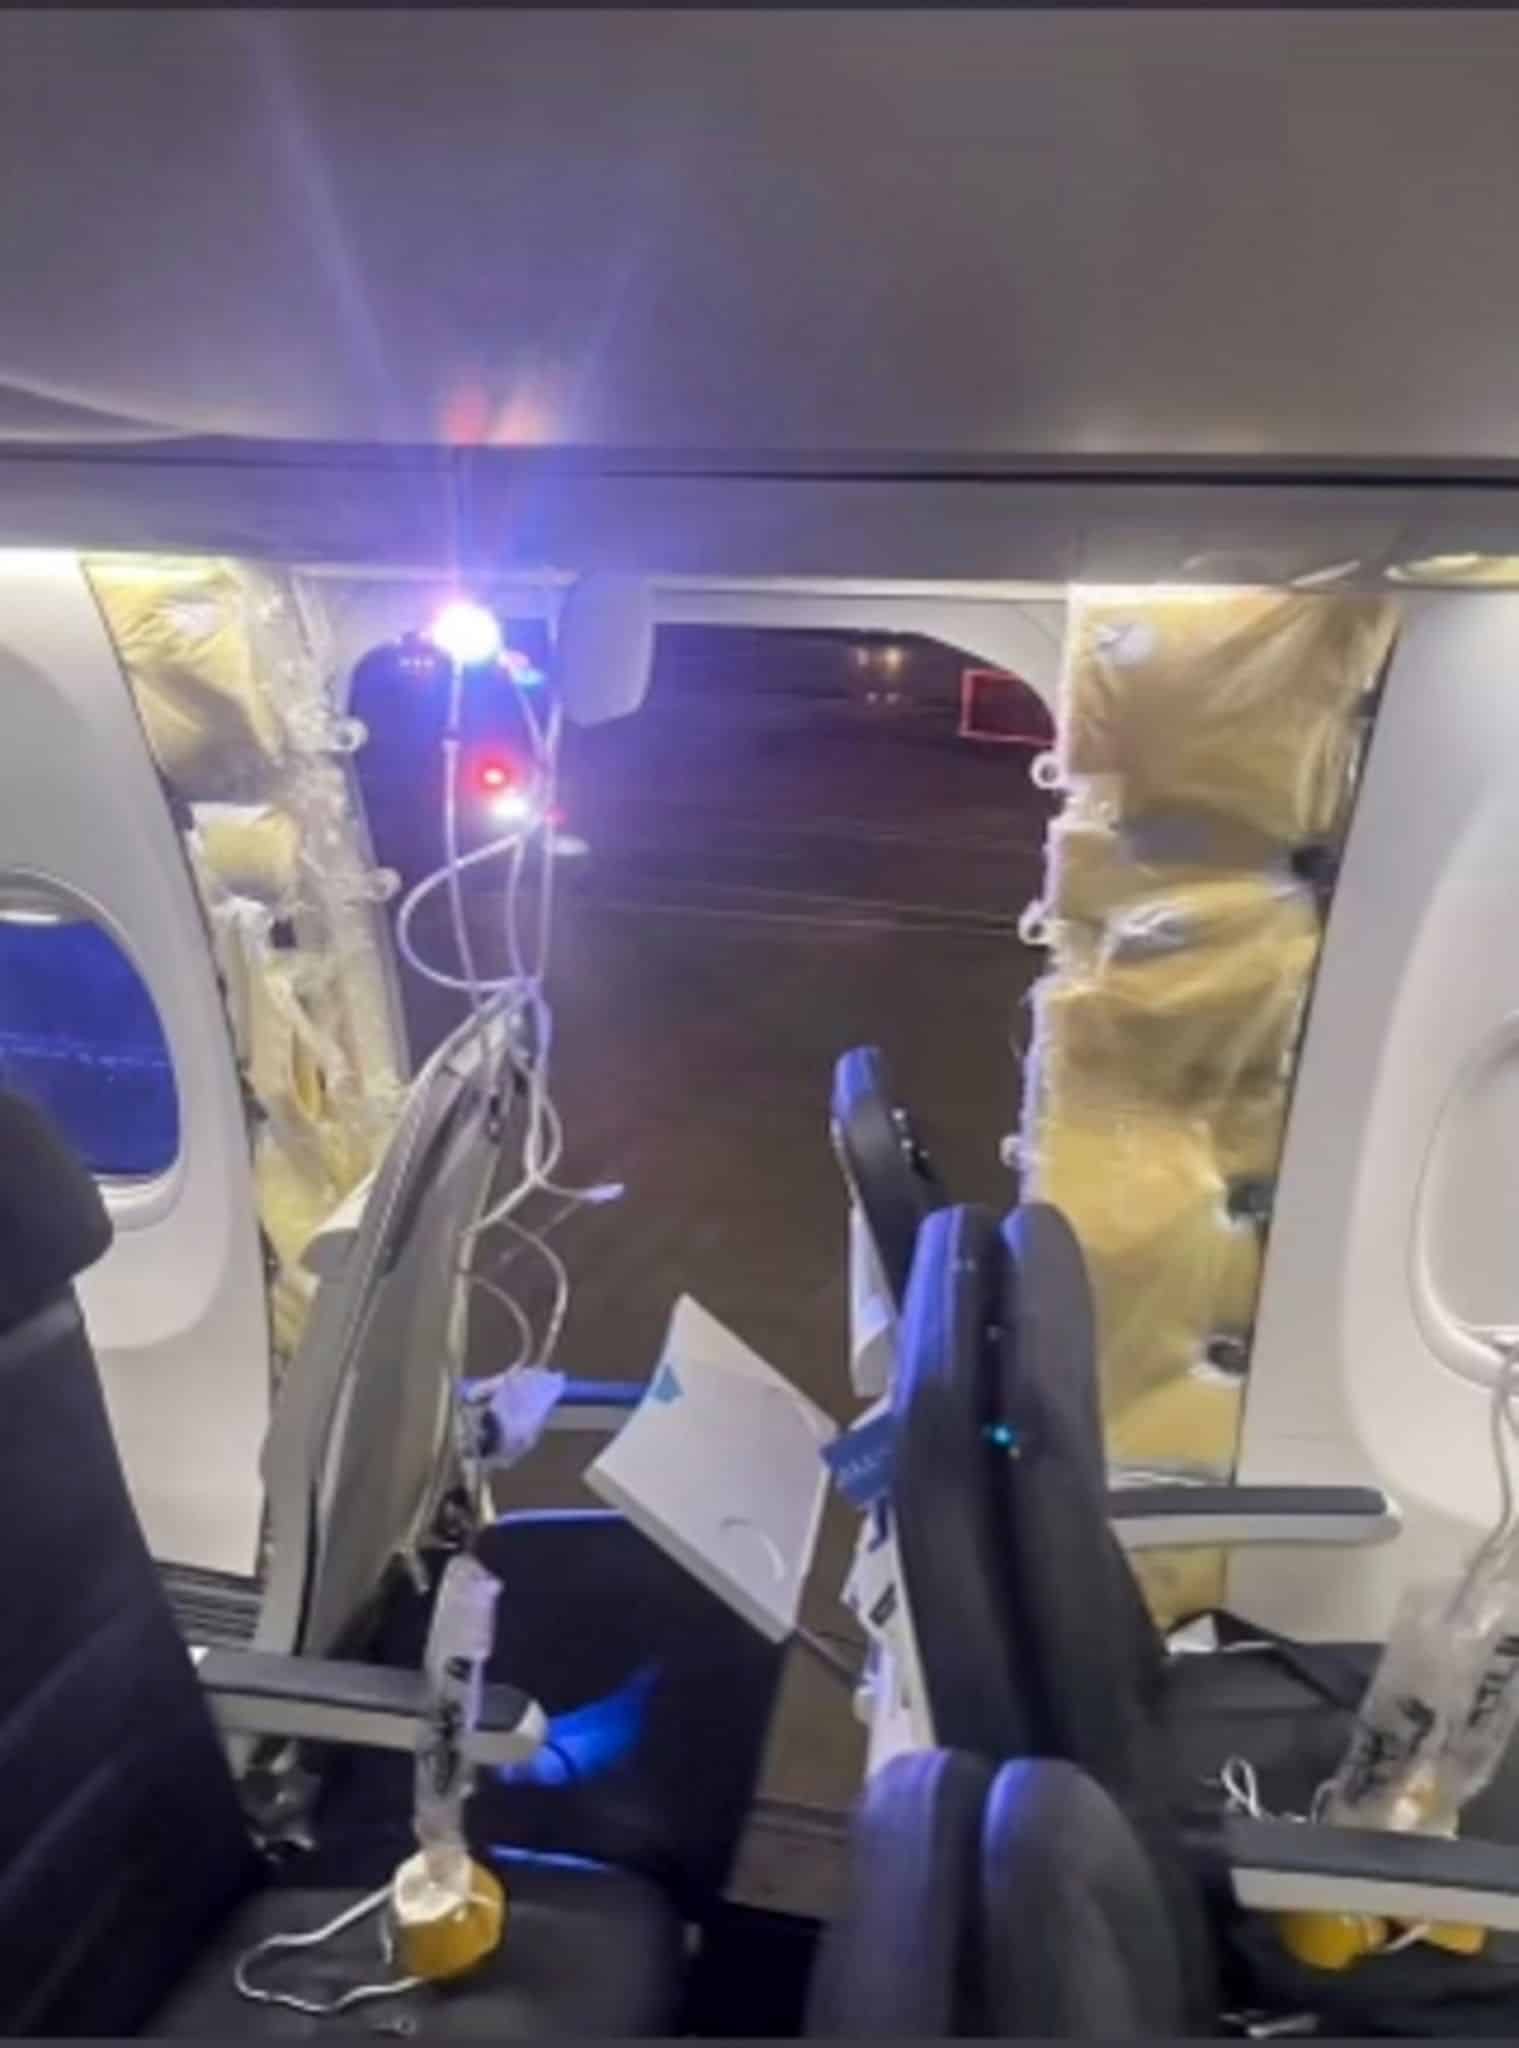 Fenster im Flug verloren: Flugverbot für bestimmte Maschinen